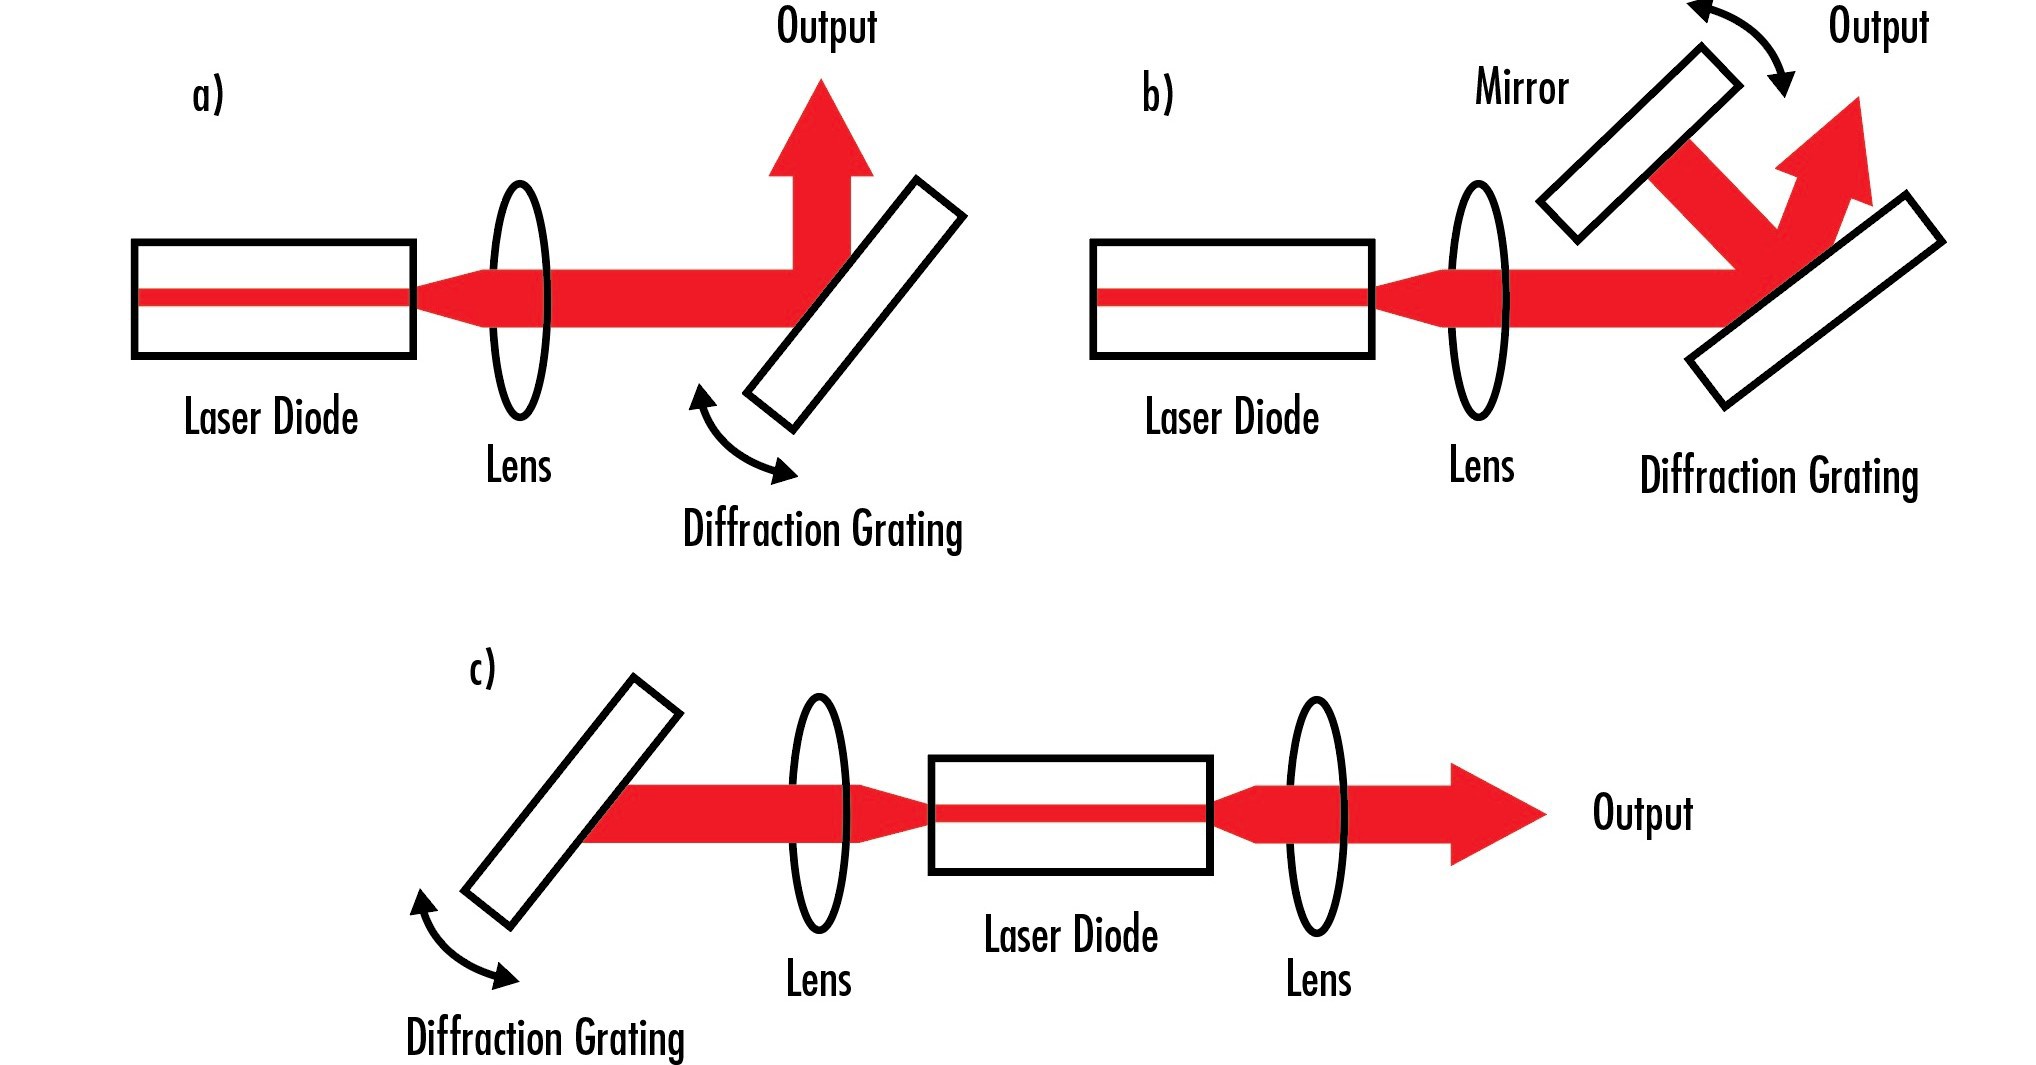 Diese drei Aufbauten zeigen die verschiedenen Möglichkeiten, wie Gitter verwendet werden können, um die Ausgangswellenlängen eines Lasers abzustimmen oder den Ausgangswellenlängenbereich einzuengen